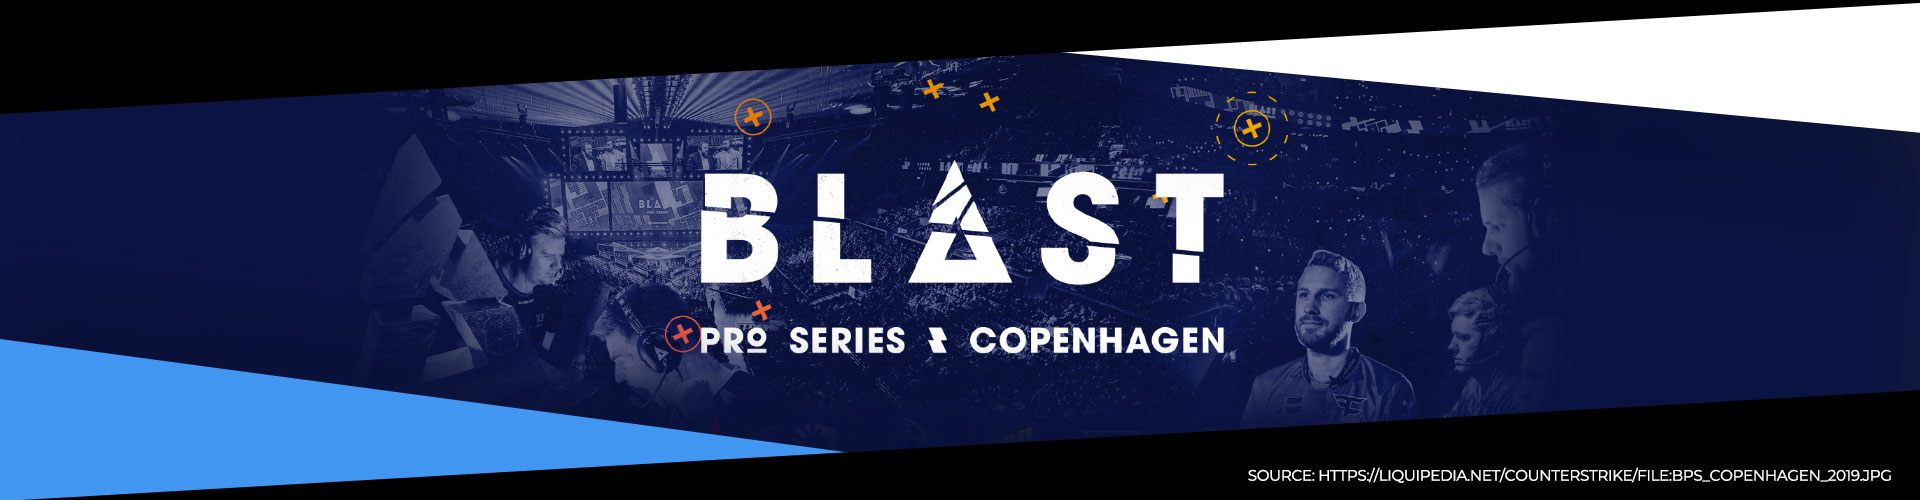 Eventsida för BLAST Pro Series Copenhagen.